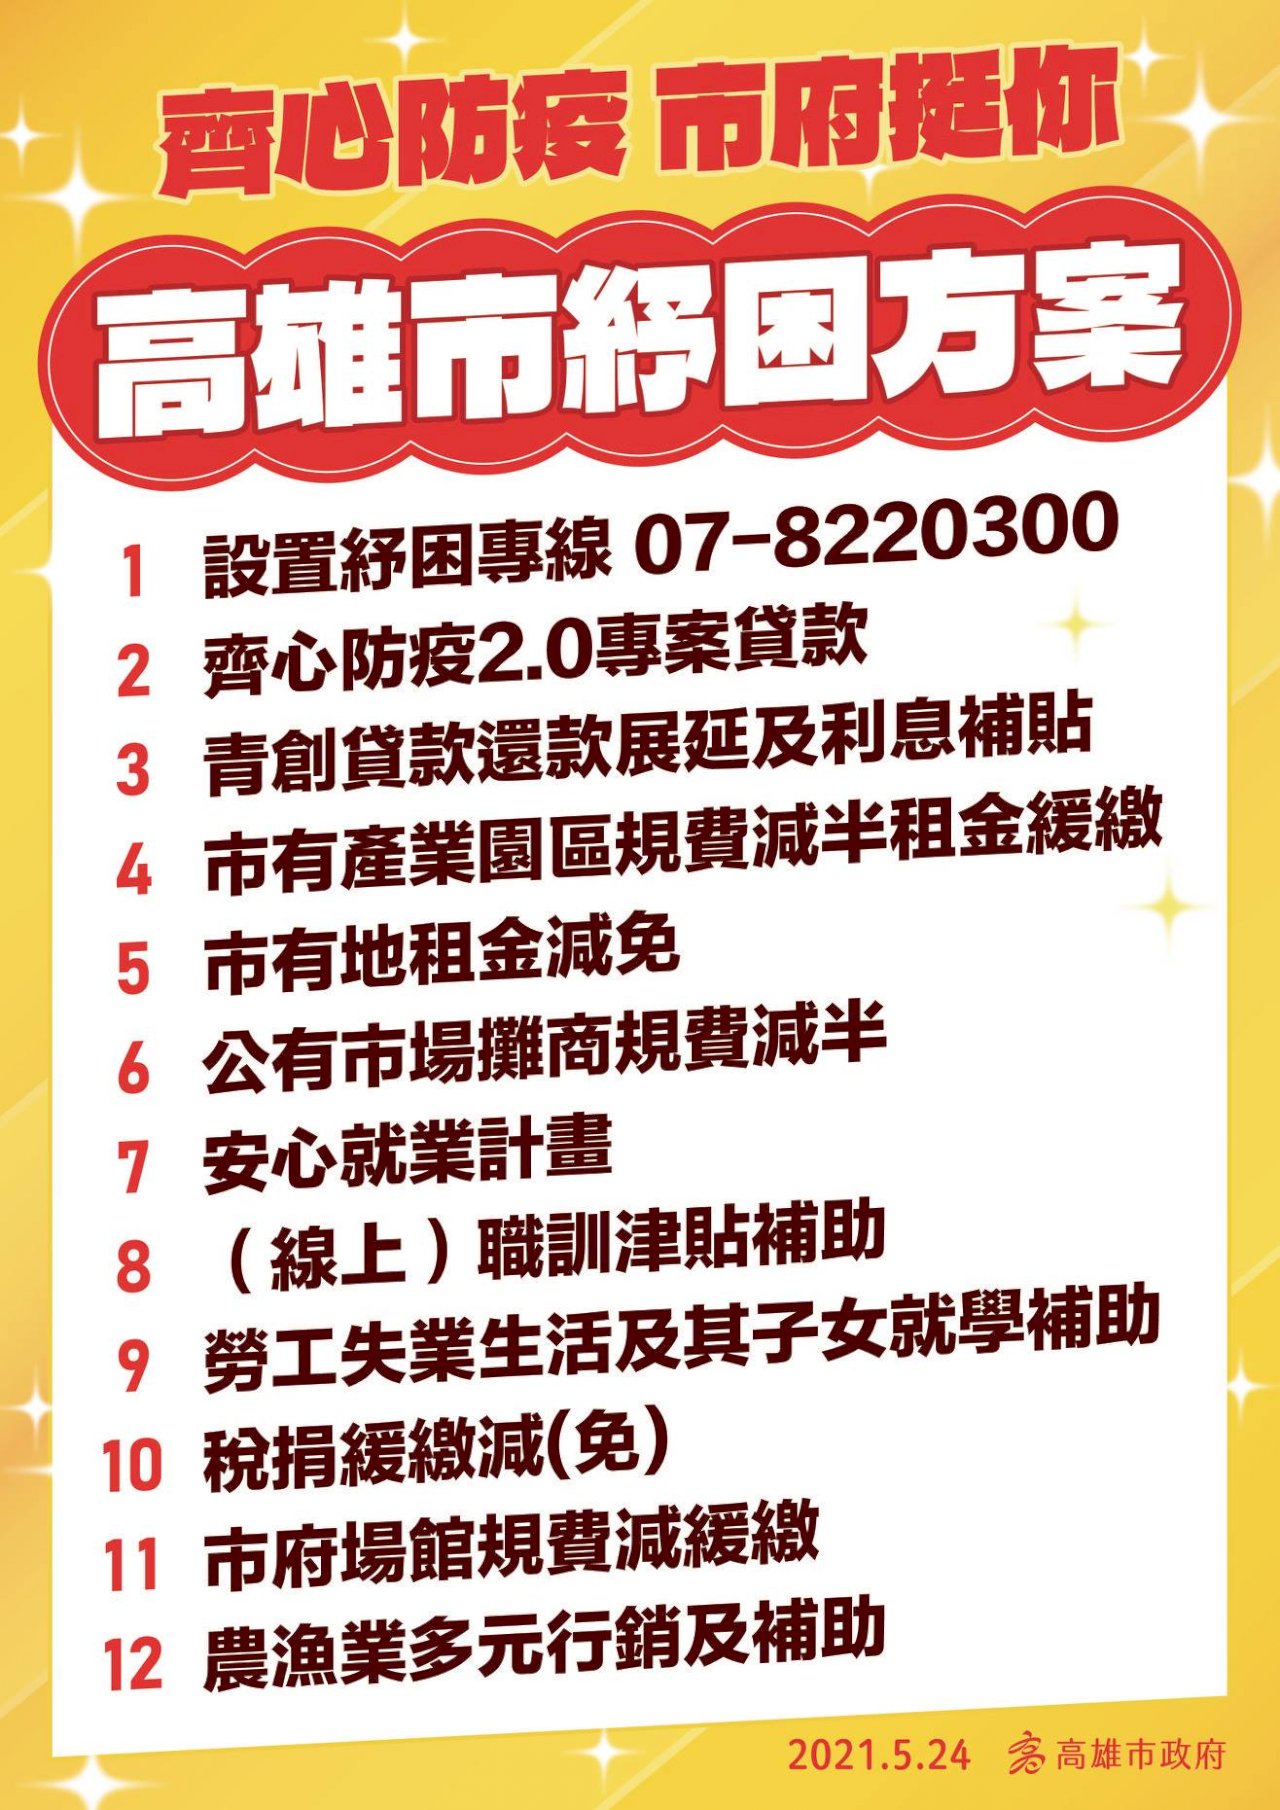 Chính quyền thành phố Cao Hùng đã đưa ra 12 chương trình cứu trợ hy vọng có thể cùng với người dân vượt qua khó khăn trong mùa dịch. (Nguồn ảnh: trích dẫn từ Facebook thị trưởng thành phố Cao Hùng Trần Kỳ Mại)